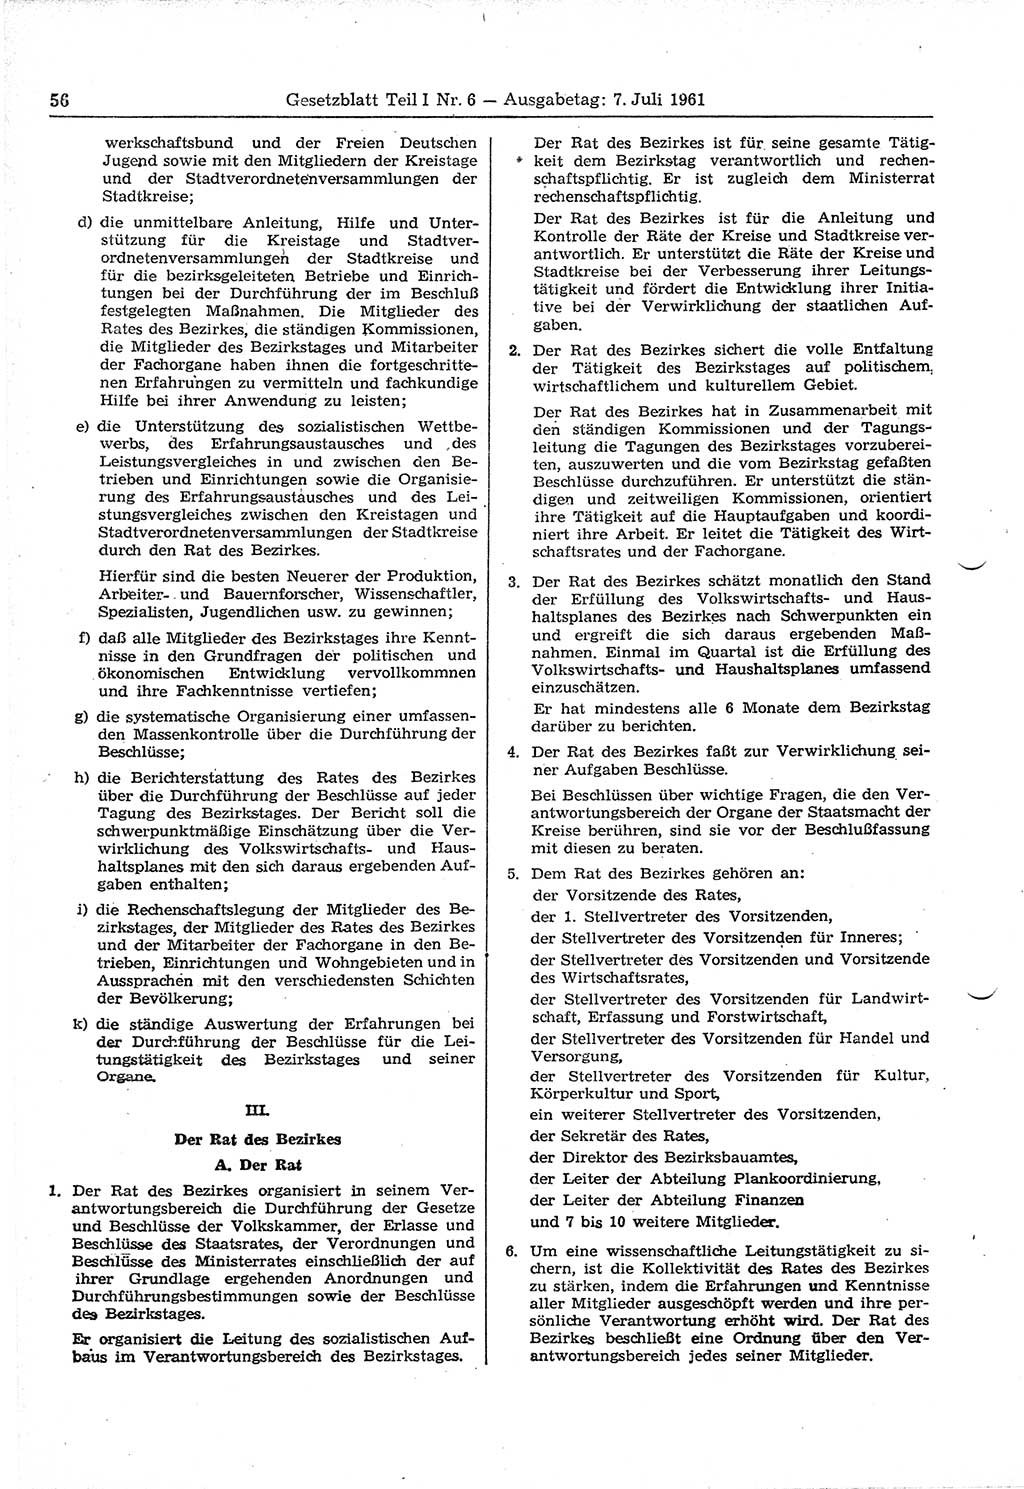 Gesetzblatt (GBl.) der Deutschen Demokratischen Republik (DDR) Teil Ⅰ 1961, Seite 56 (GBl. DDR Ⅰ 1961, S. 56)